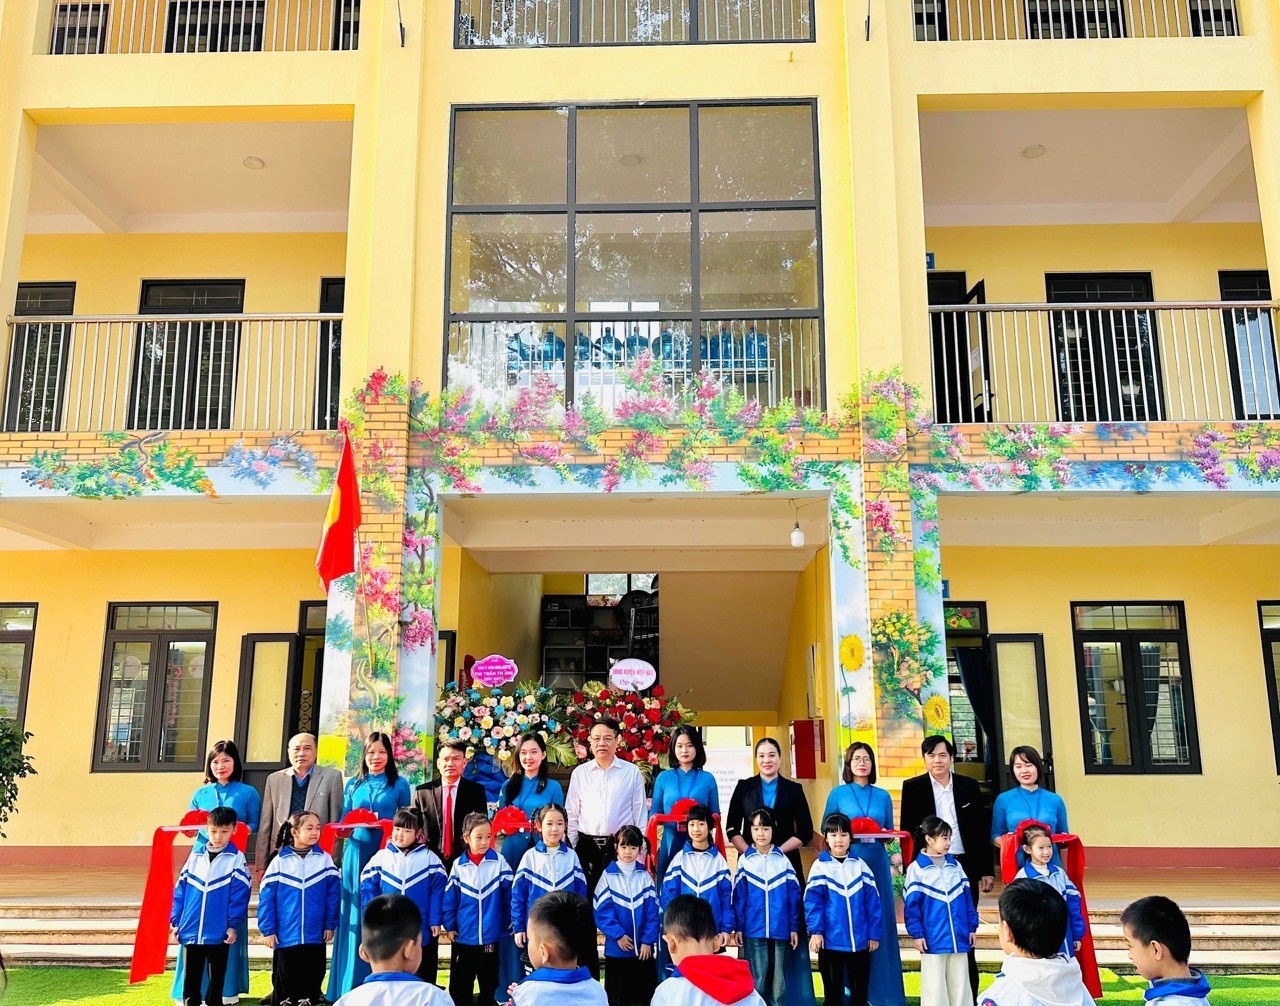 Khối nhà lớp học 3 tầng 12 phòng trường Tiểu học thị trấn Thắng, huyện Hiệp Hòa, tỉnh Bắc Giang.